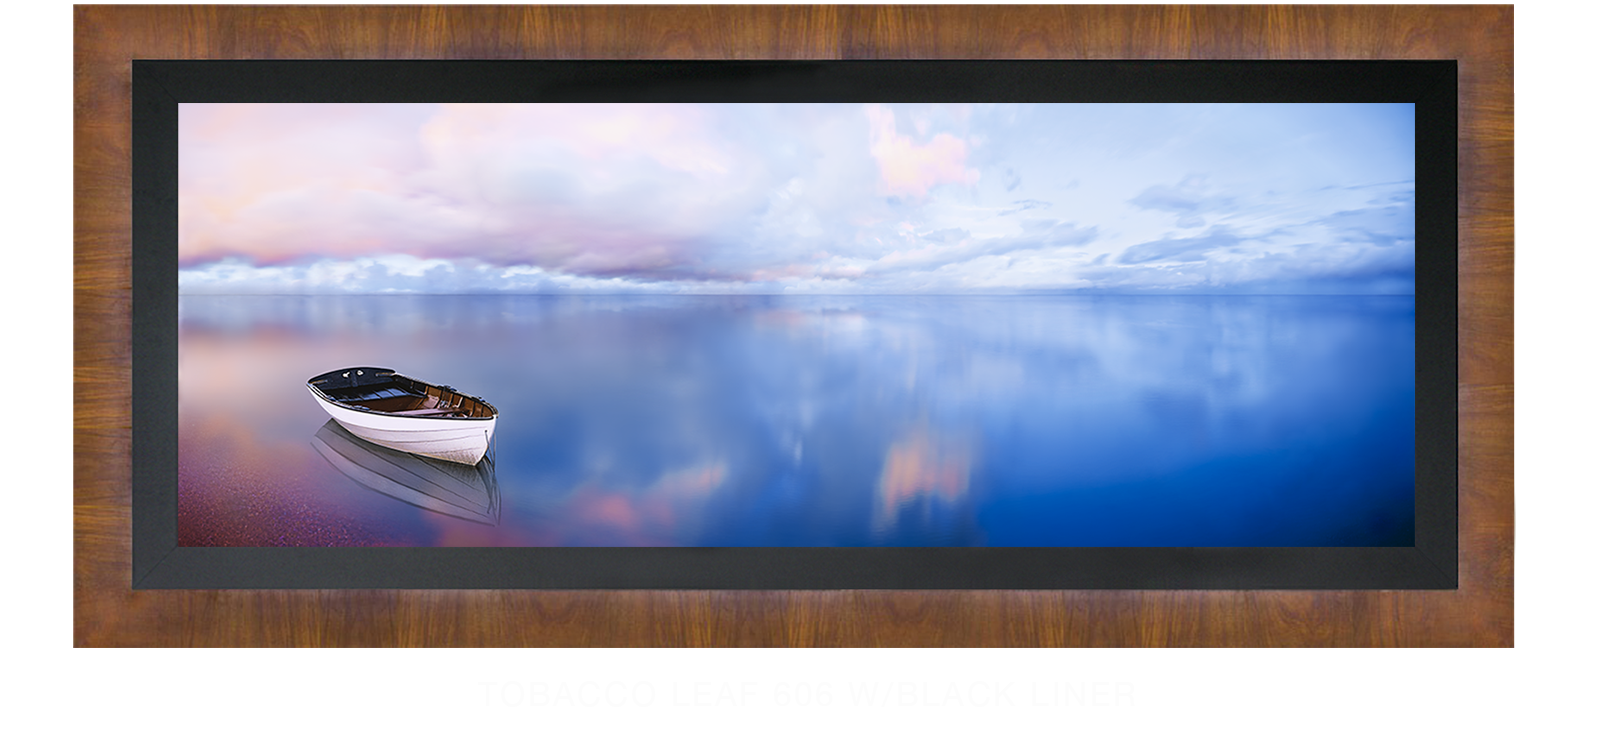 23BLUELAKEBOAT Tobacco Leaf 606 w_Blk Liner T